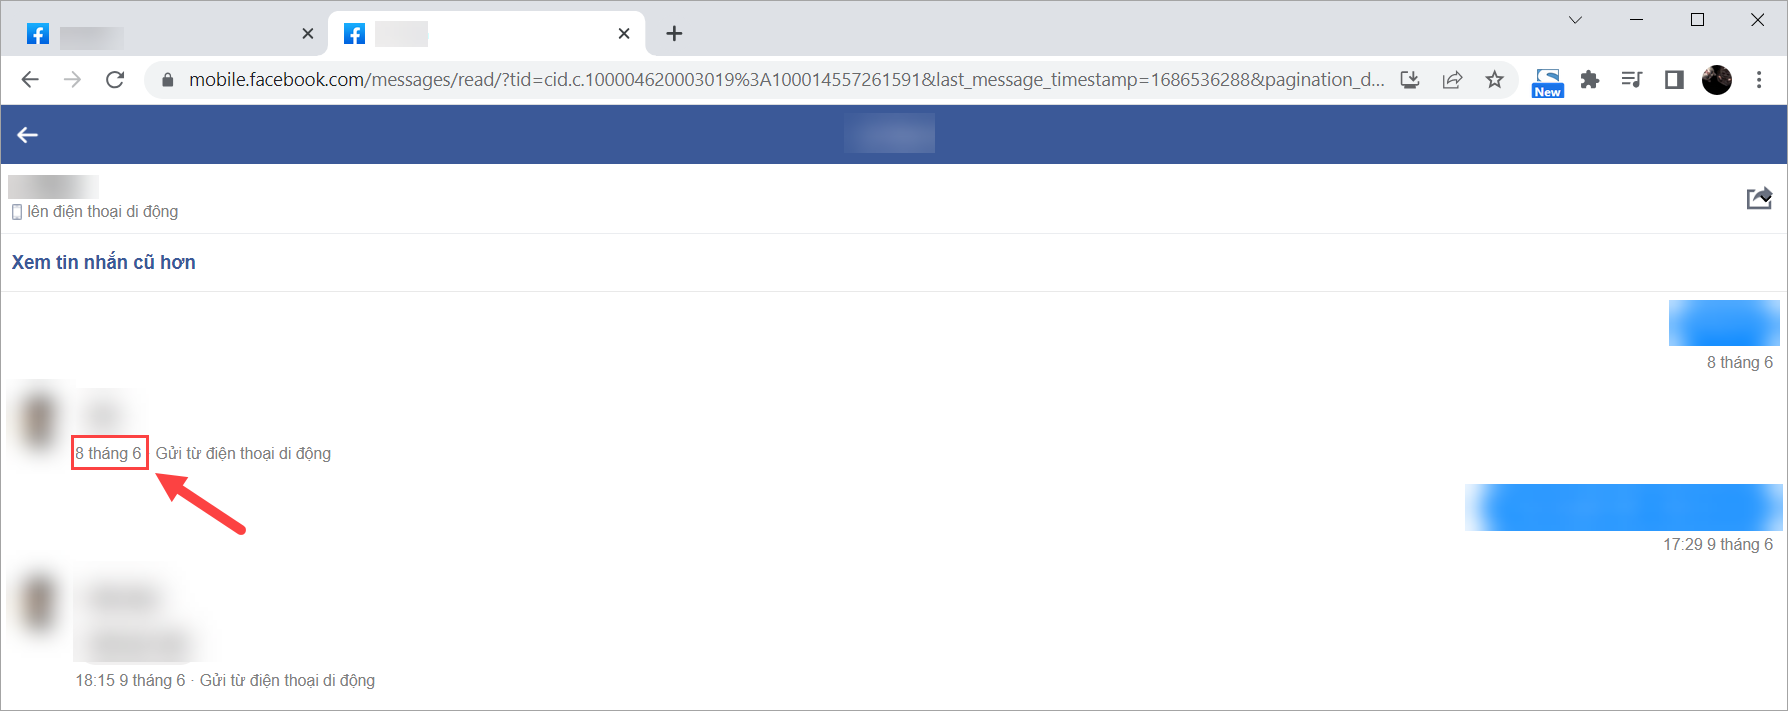 Messenger Facebook sẽ gửi bạn kết quả tin nhắn dựa theo ngày bạn đã chọn trước đó